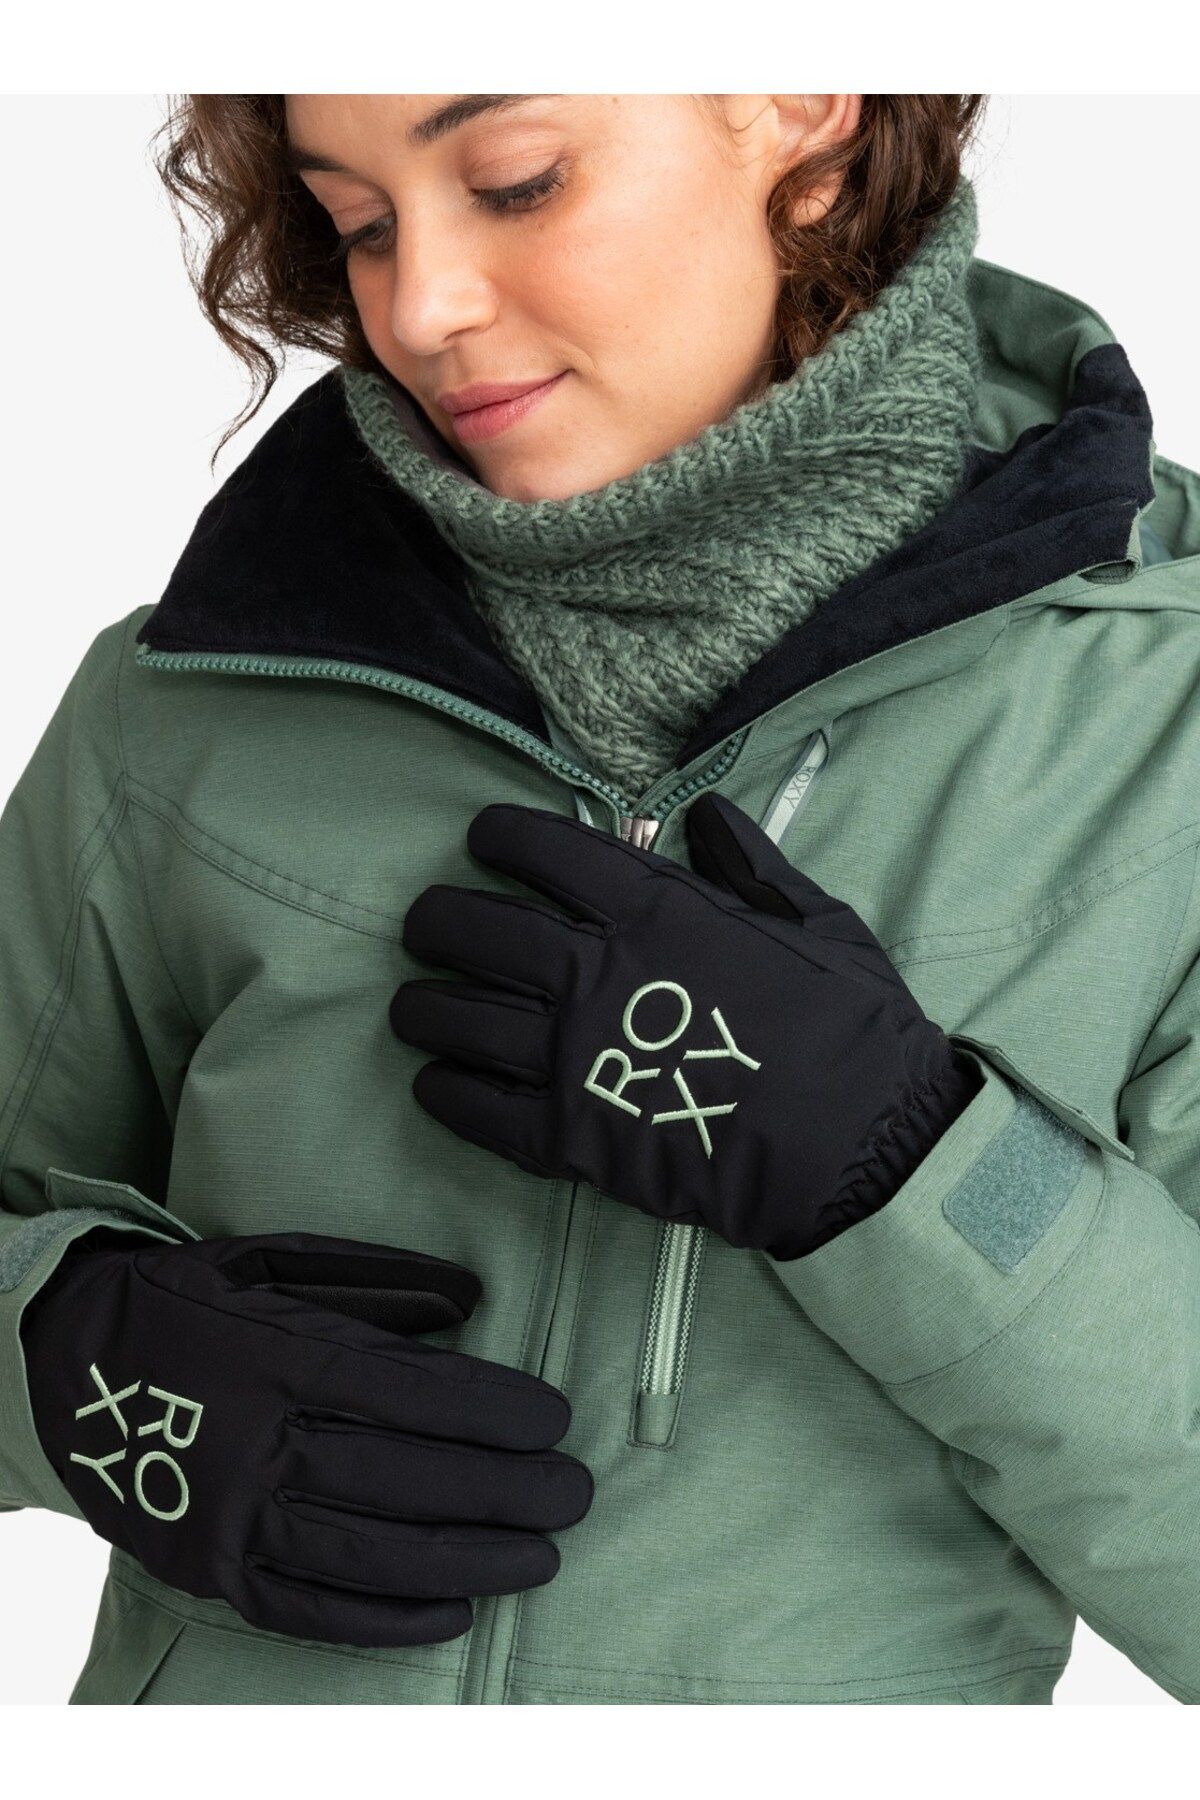 Roxy Kadın Freshfıeld Gloves Anthracite - Solid Eldiven Erjhn03239-kvj0